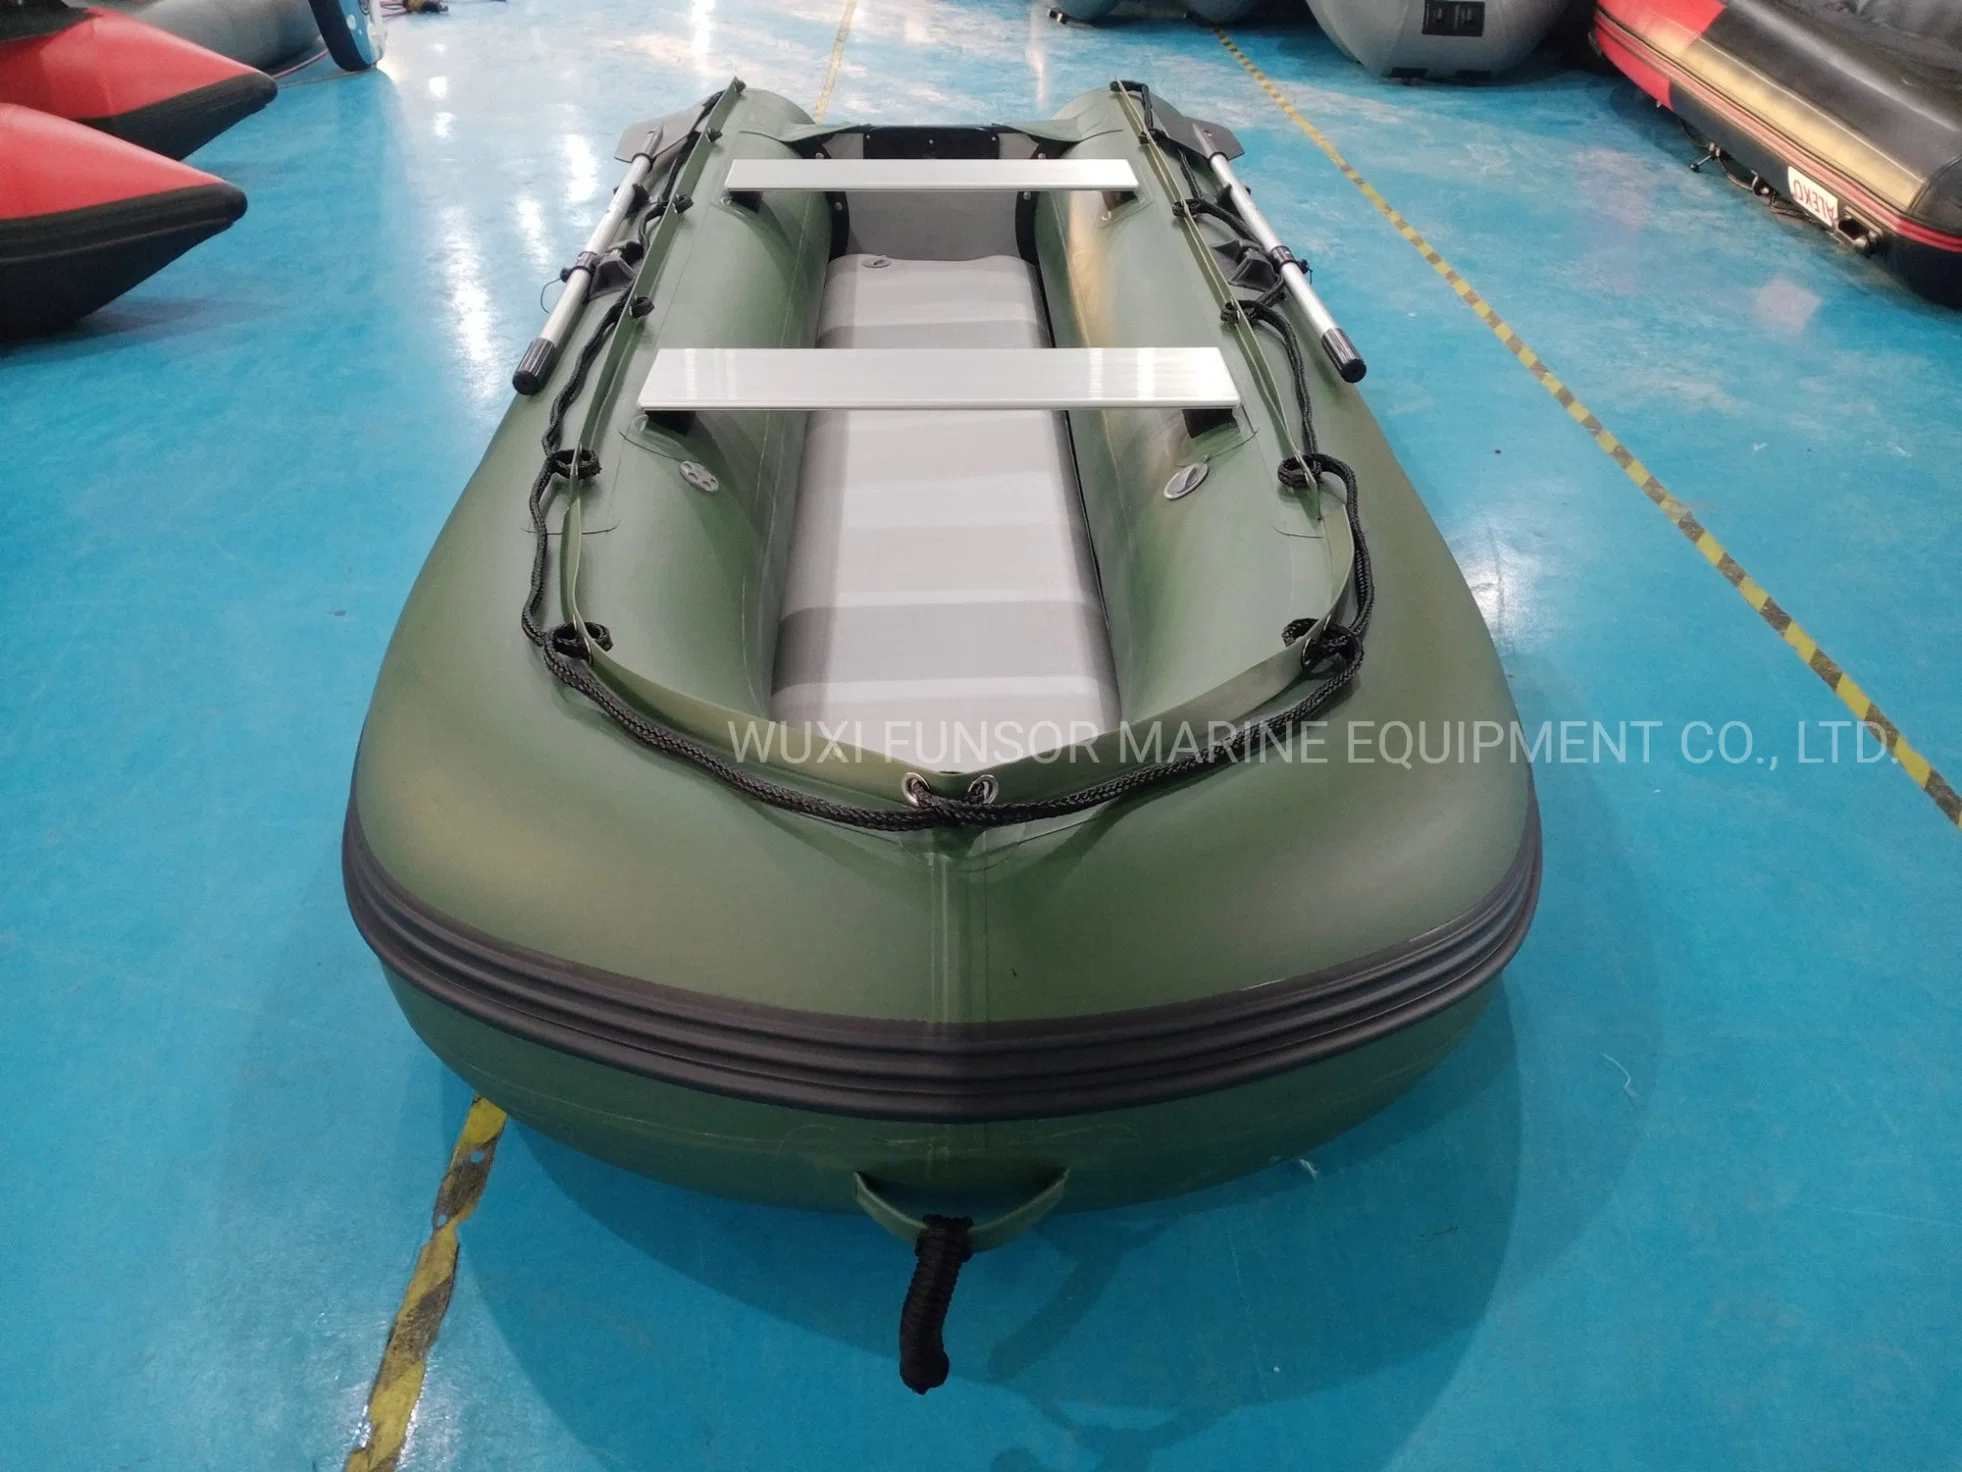 Funsor PVC rigide en canot gonflable de gouvernail Kayak avec moteur électrique de la ligne traînante